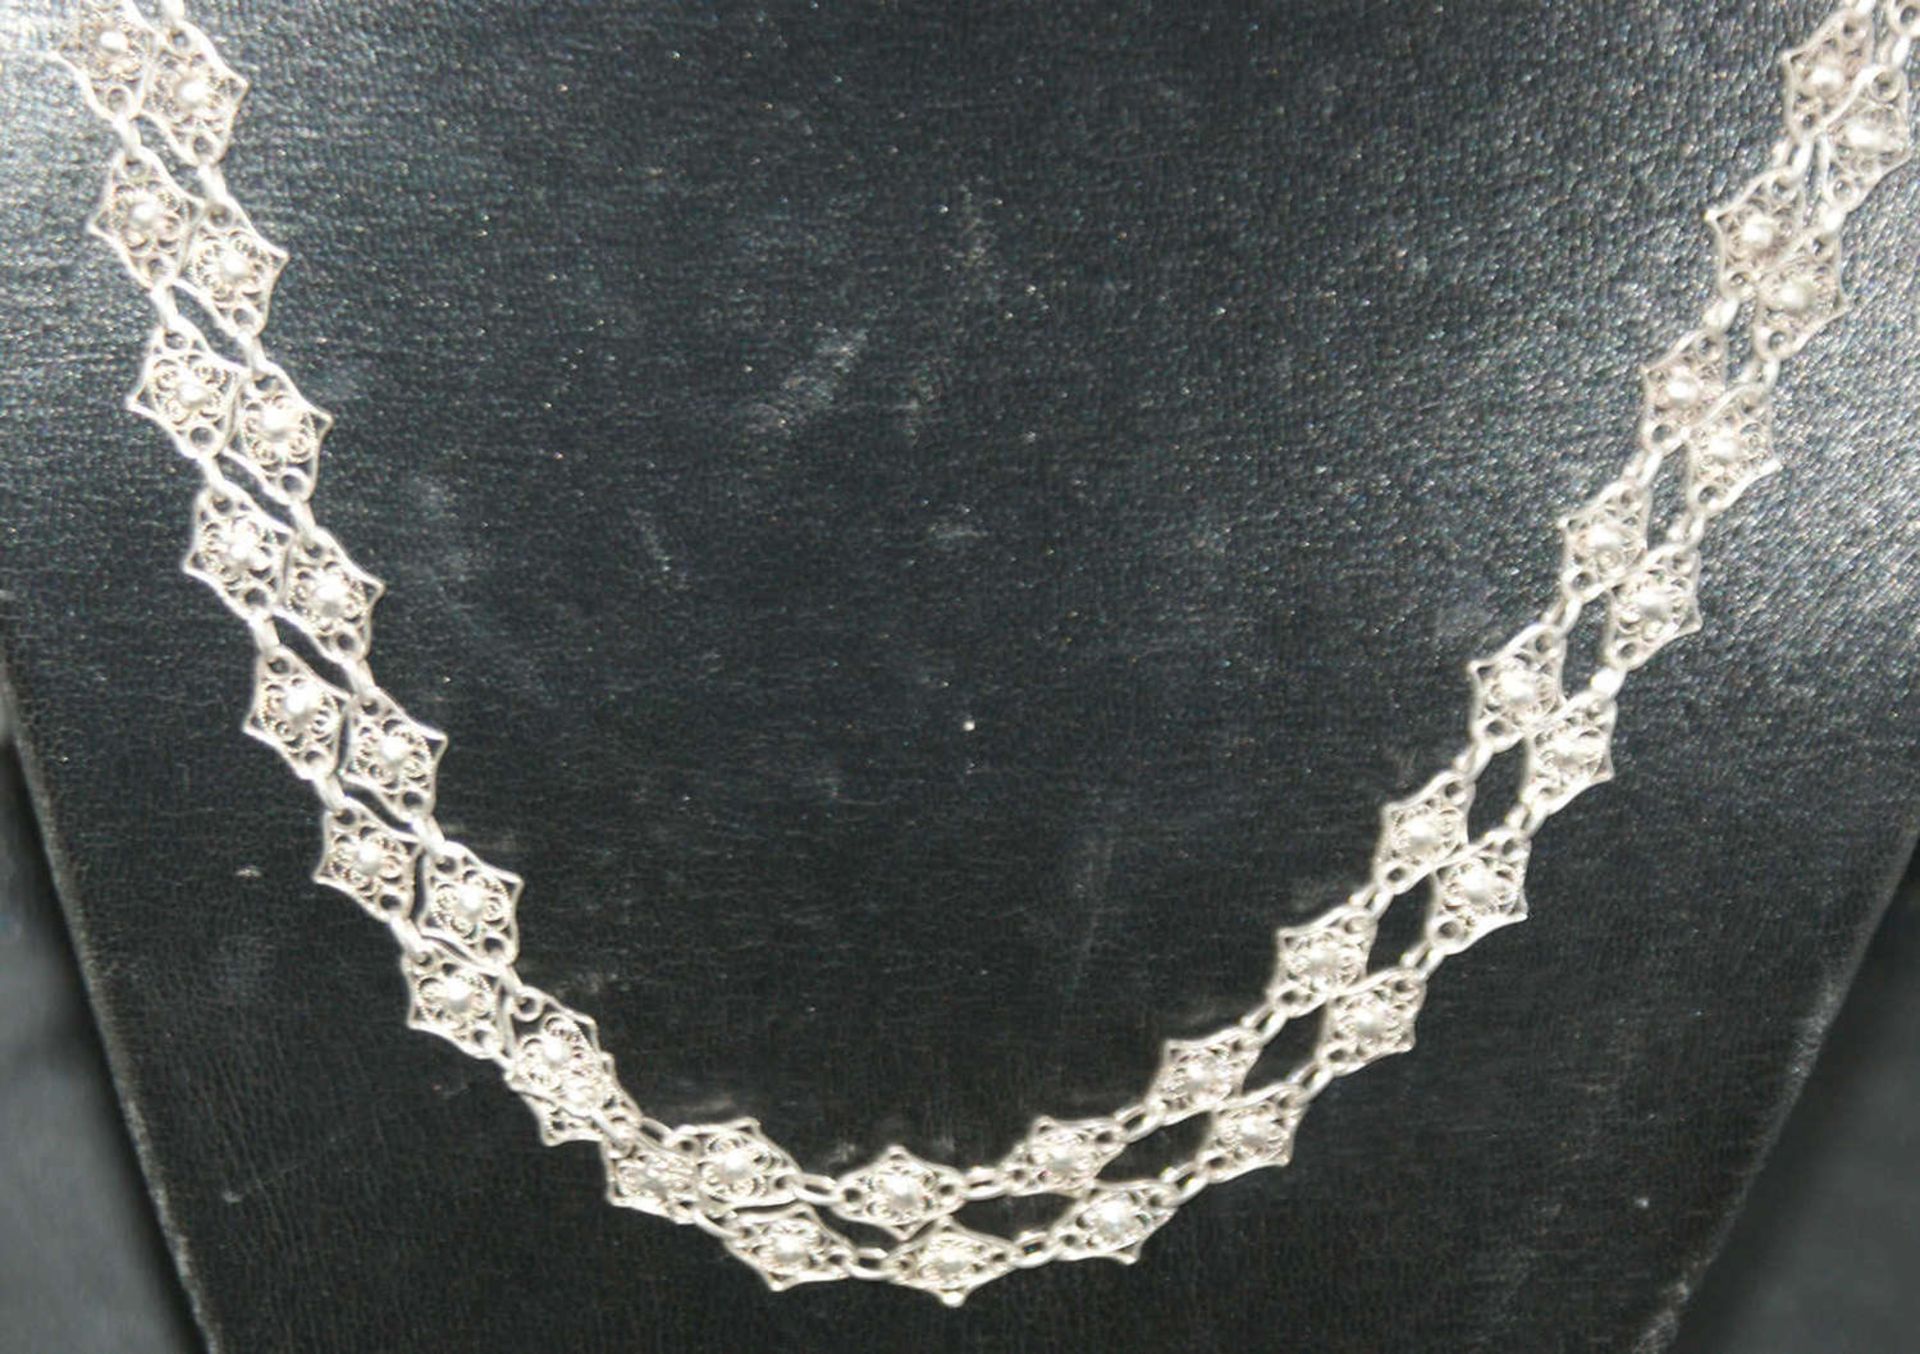 Trachtenkette, Silber, 3-reihig, tolle Optik. Gewicht ca. 40,4 gr. - Bild 2 aus 3